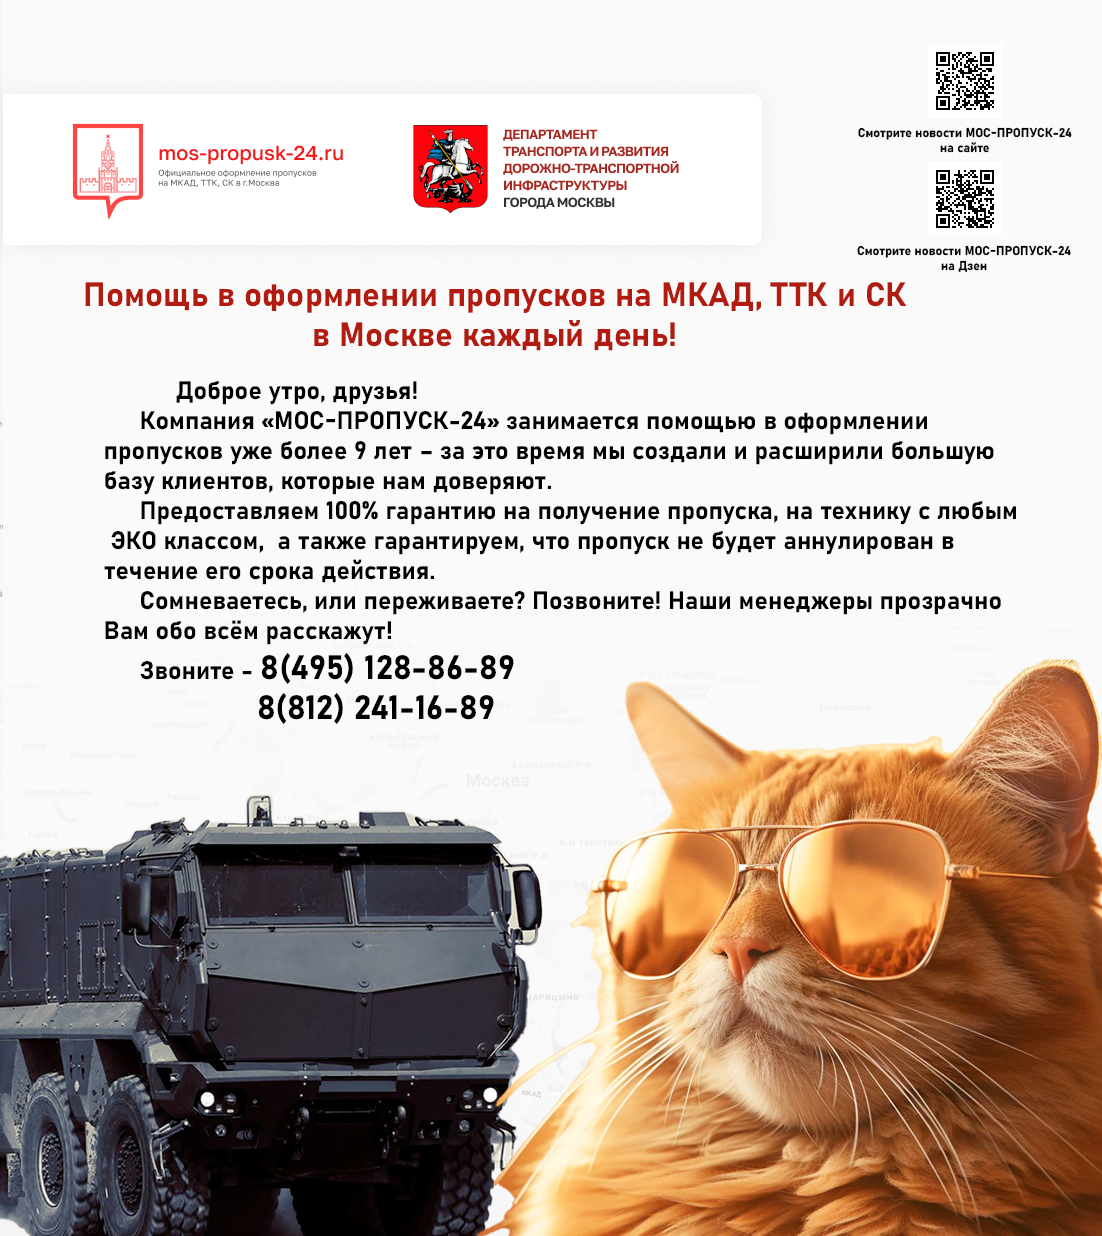 Помощь в оформлении пропусков на МКАД, ТТК и СК в Москве каждый день!